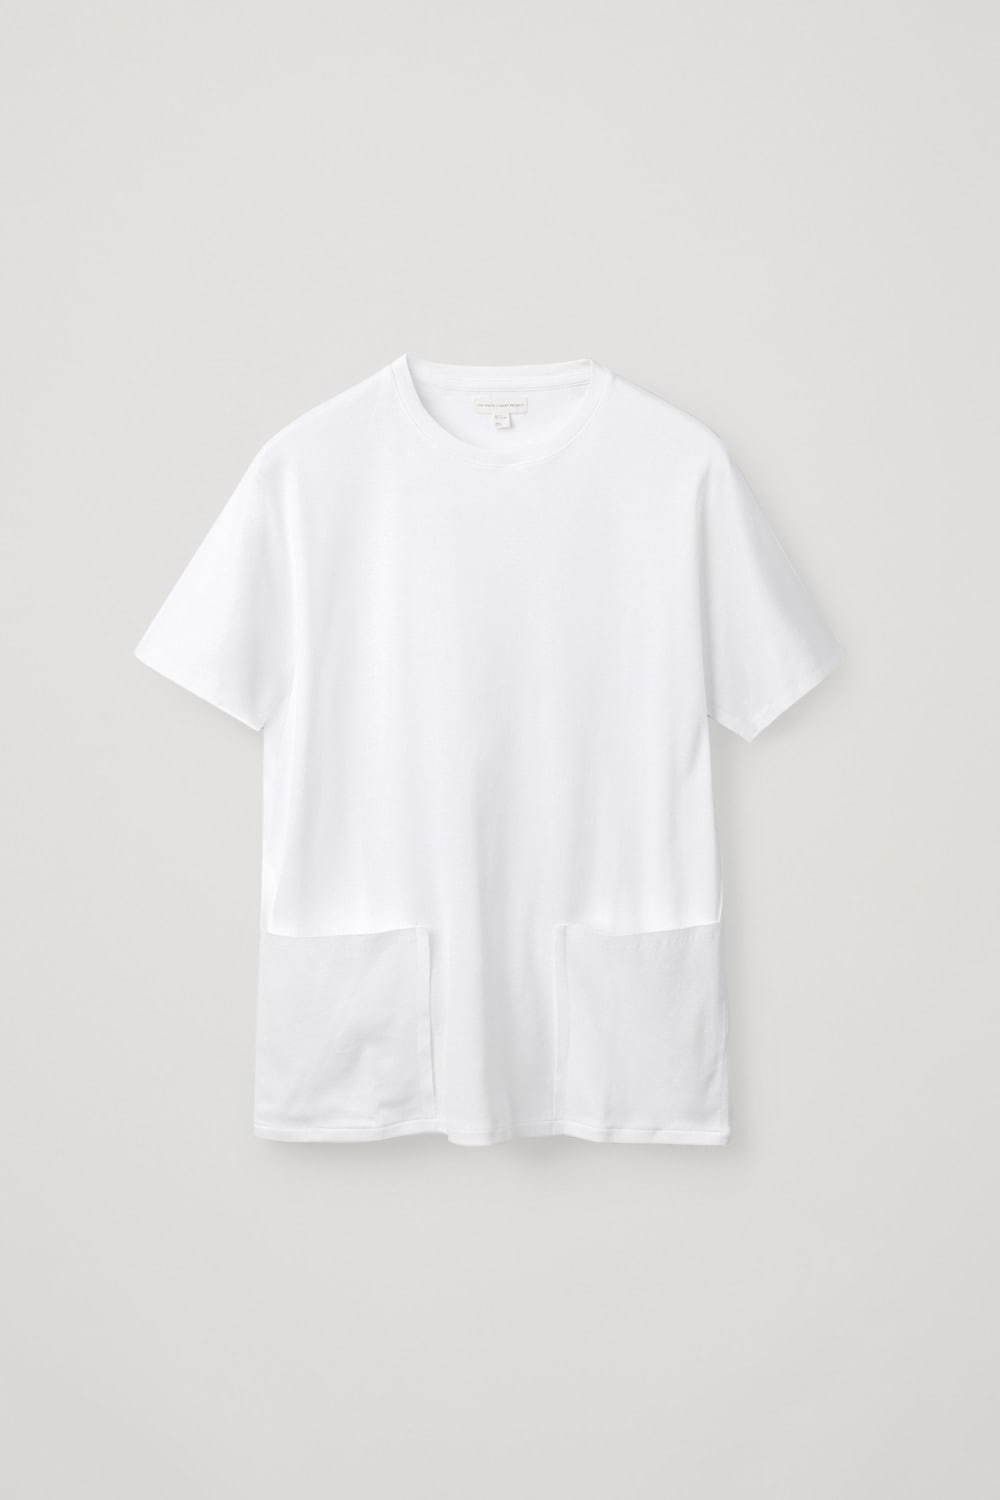 メンズ白tシャツ特集 人気ブランドのおすすめ無地tシャツやロゴt おしゃれコーデの定番アイテム ファッションプレス